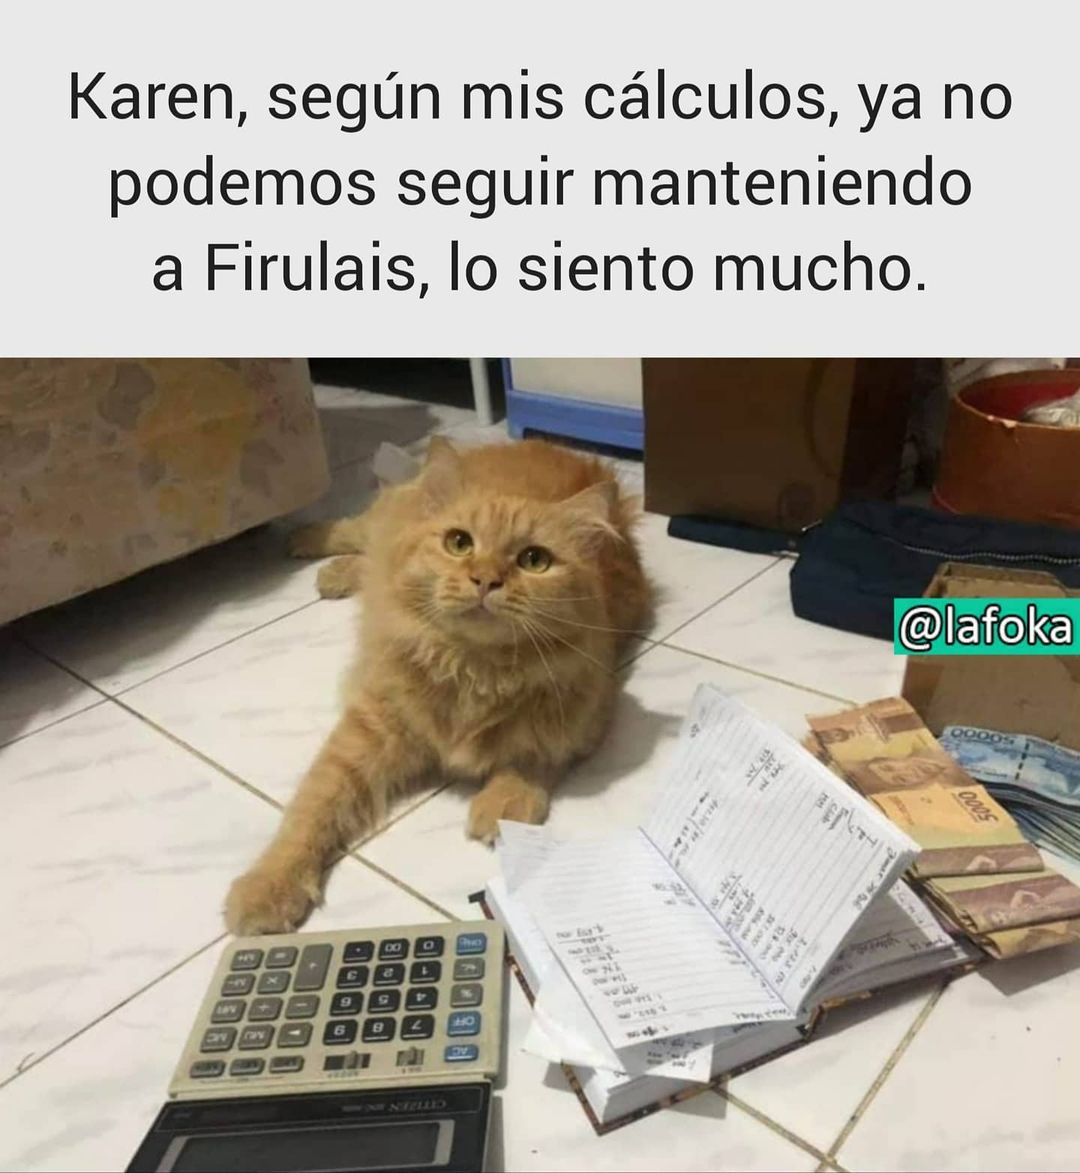 Karen, según mis cálculos, ya no podemos seguir manteniendo a Firulais, lo siento mucho.